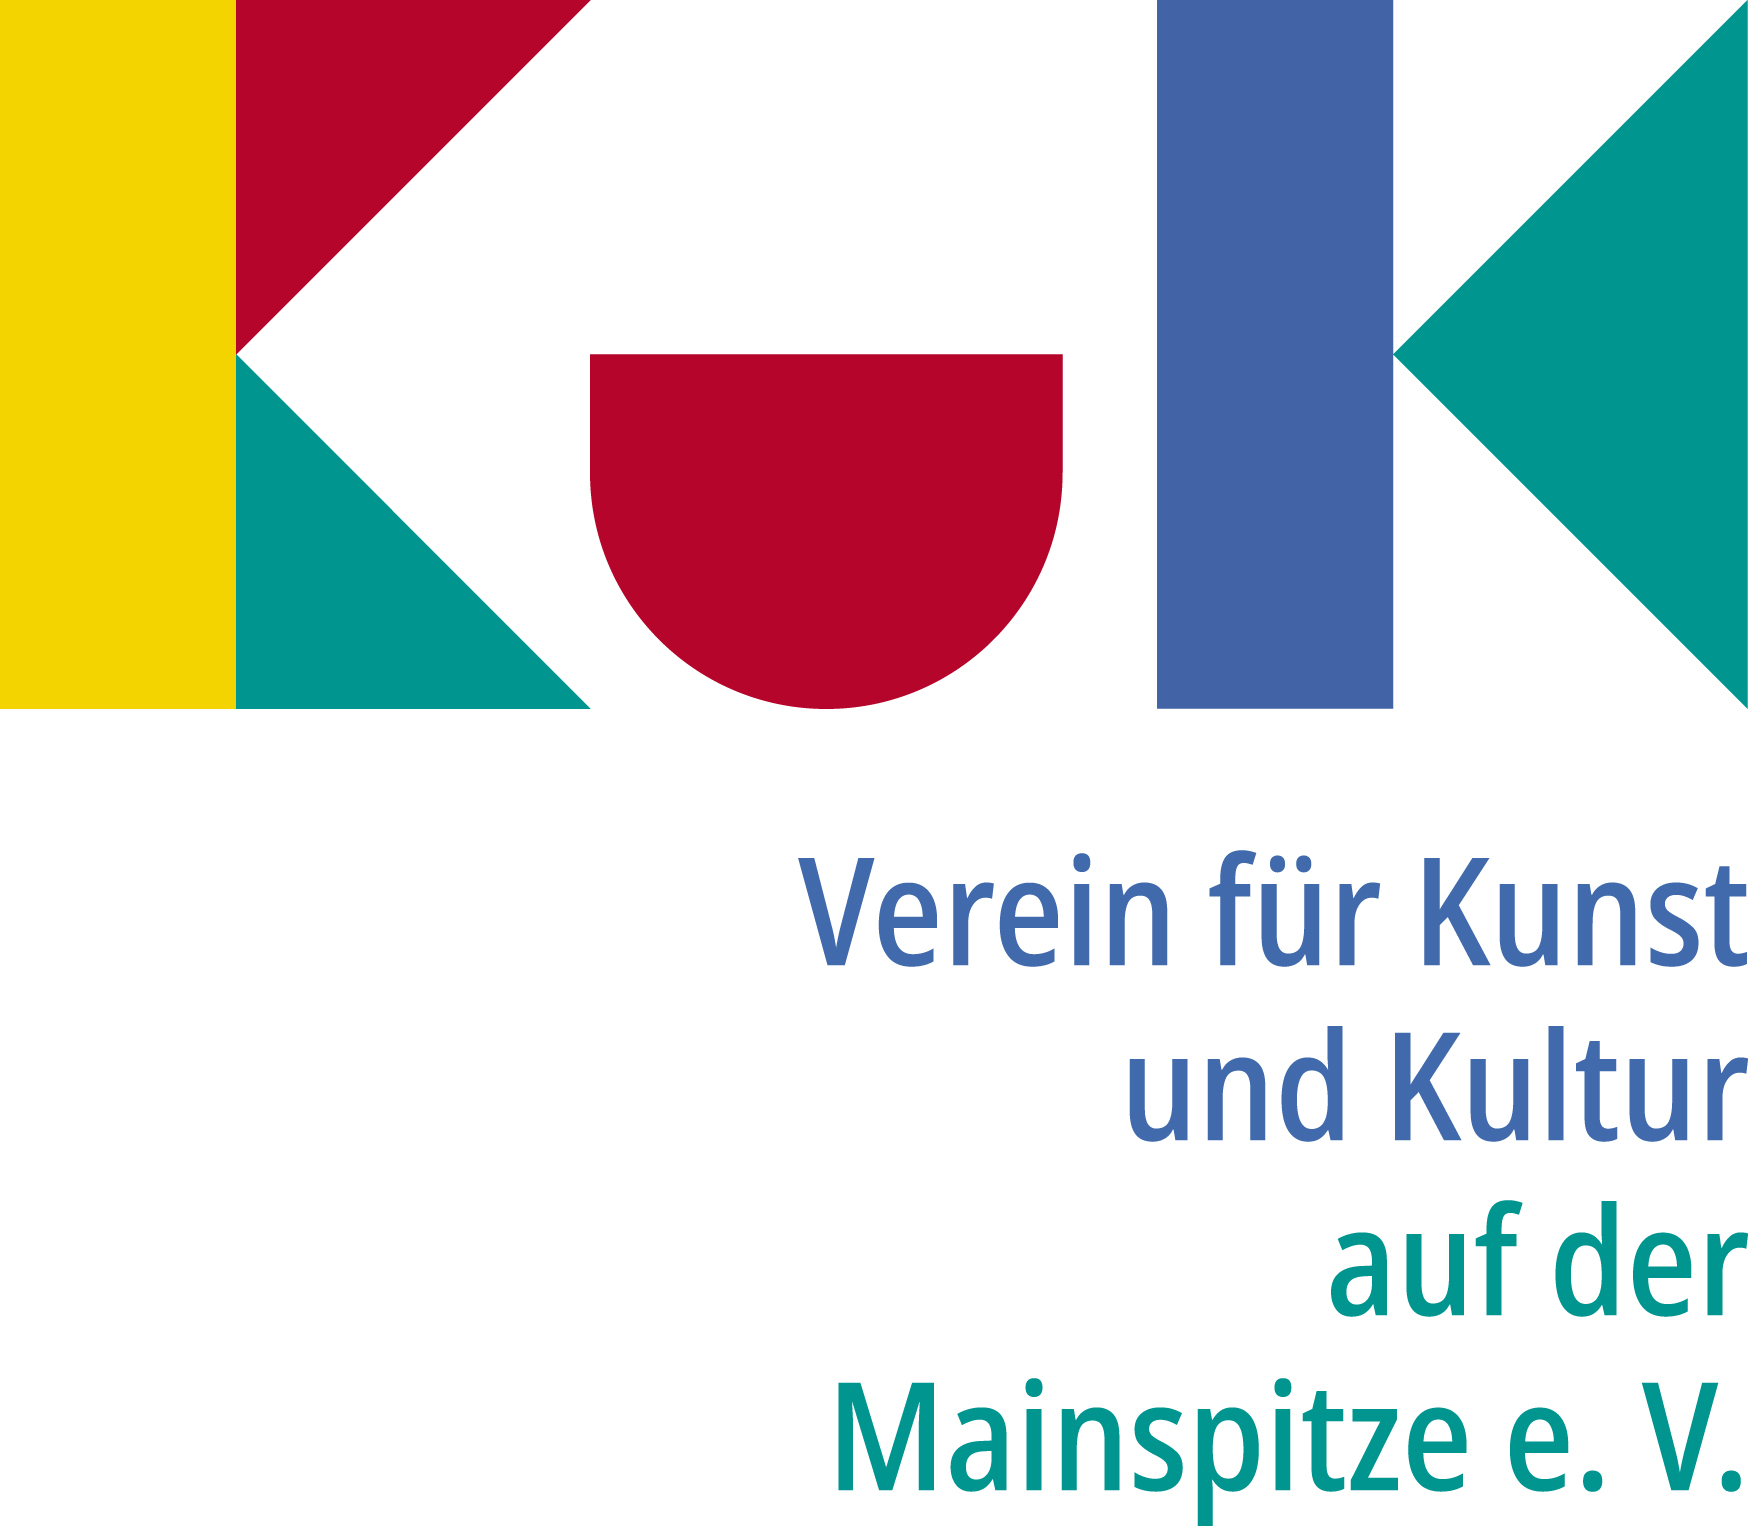 Verein für Kunst und Kultur auf der Mainspitze e.V.